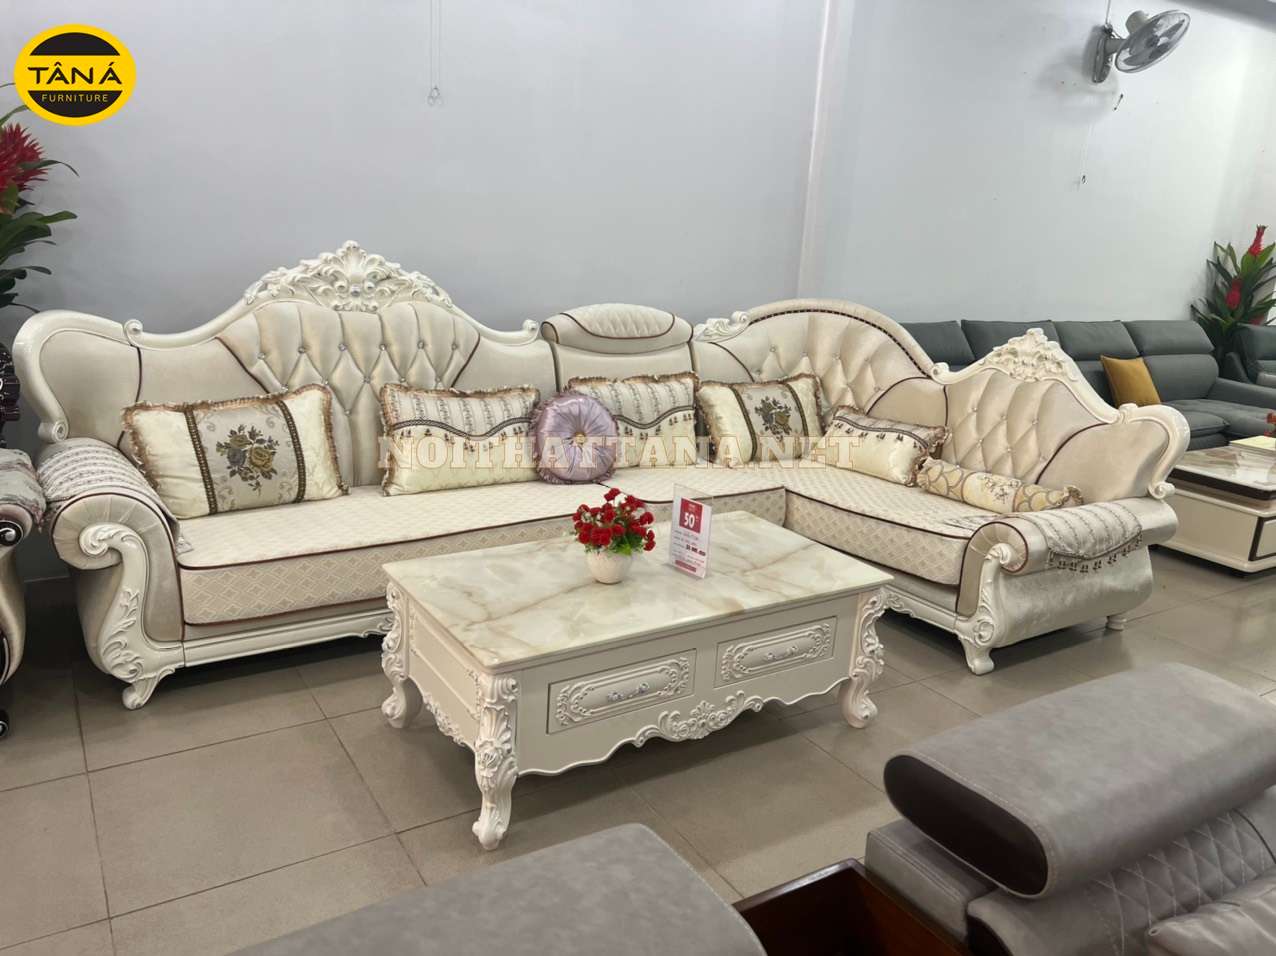 Bộ sofa phòng khách mang phong cách tân cổ điển sang trọng cho căn phòng, kết hợp những chi tiết sơn bóng mạ vàng đẳng cấp quý phái cho căn phòng. 